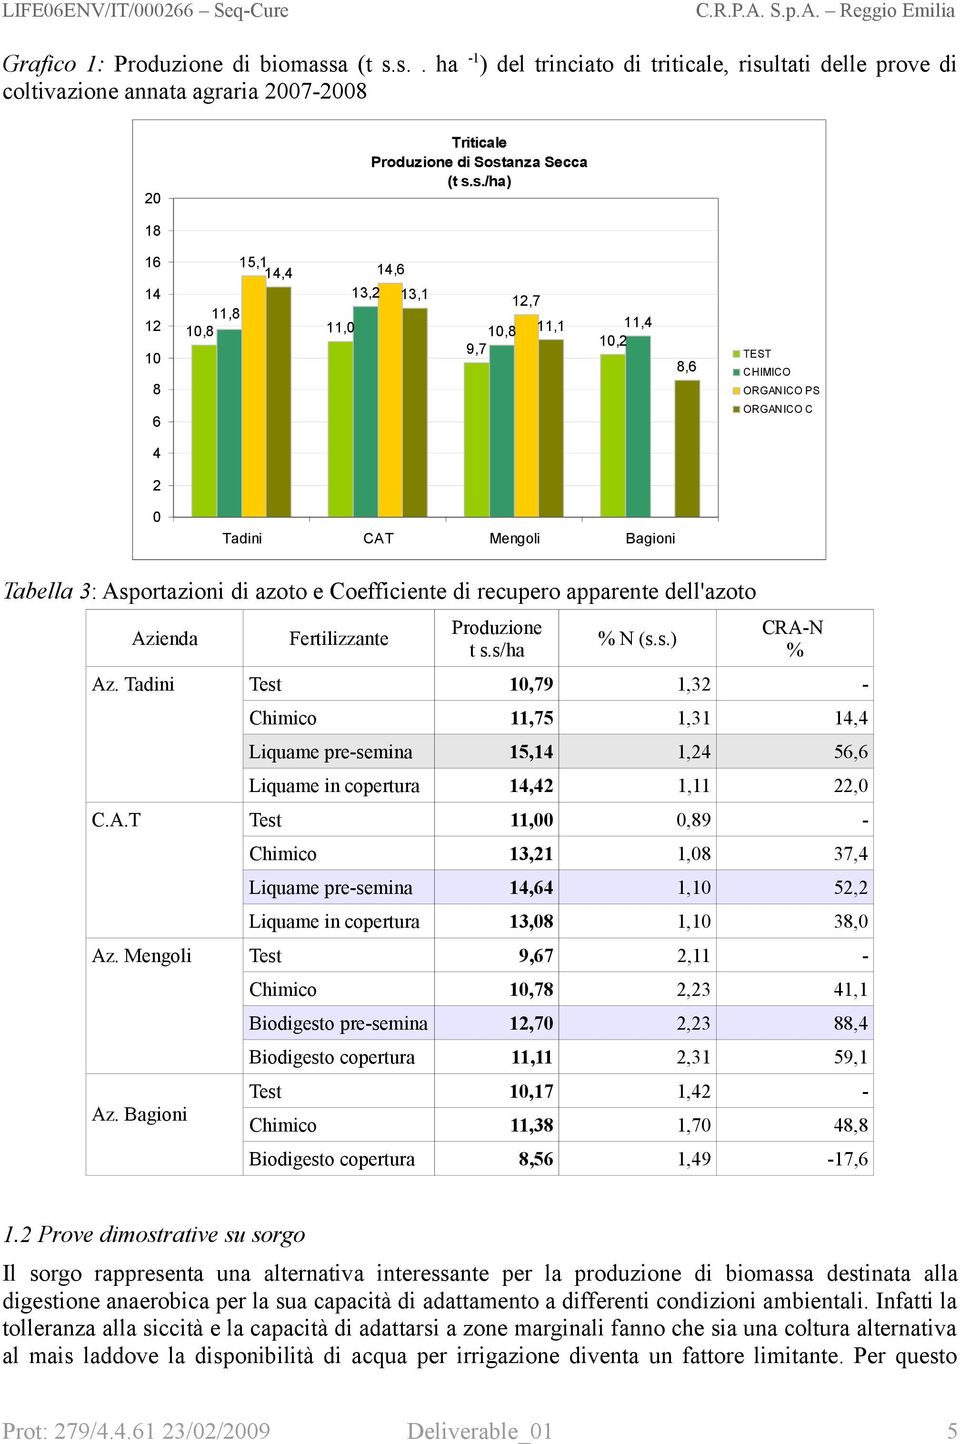 Coefficiente di recupero apparente dell'azoto Azienda Fertilizzante Produzione t s.s/ha % N (s.s.) CRA-N % Az.